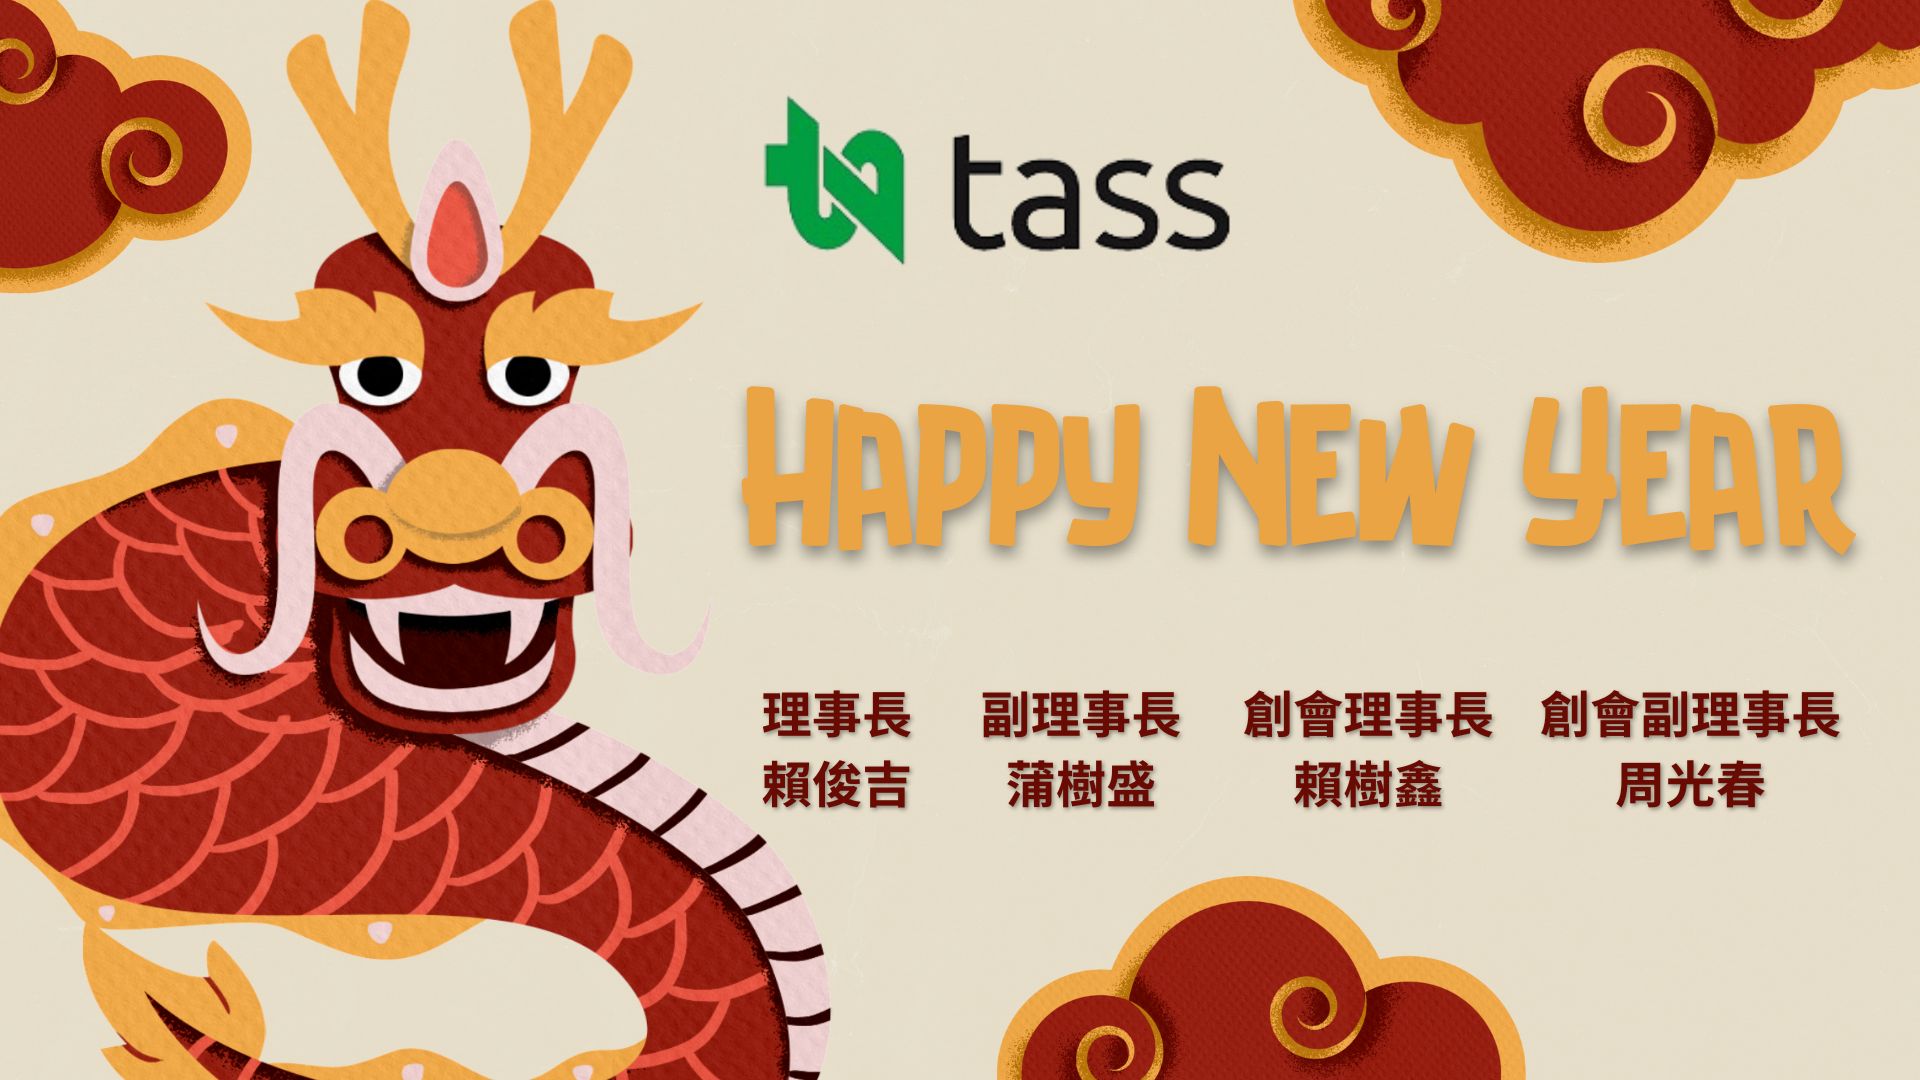 祝福 所有會員夥伴 新年快樂~~ TASS敬賀